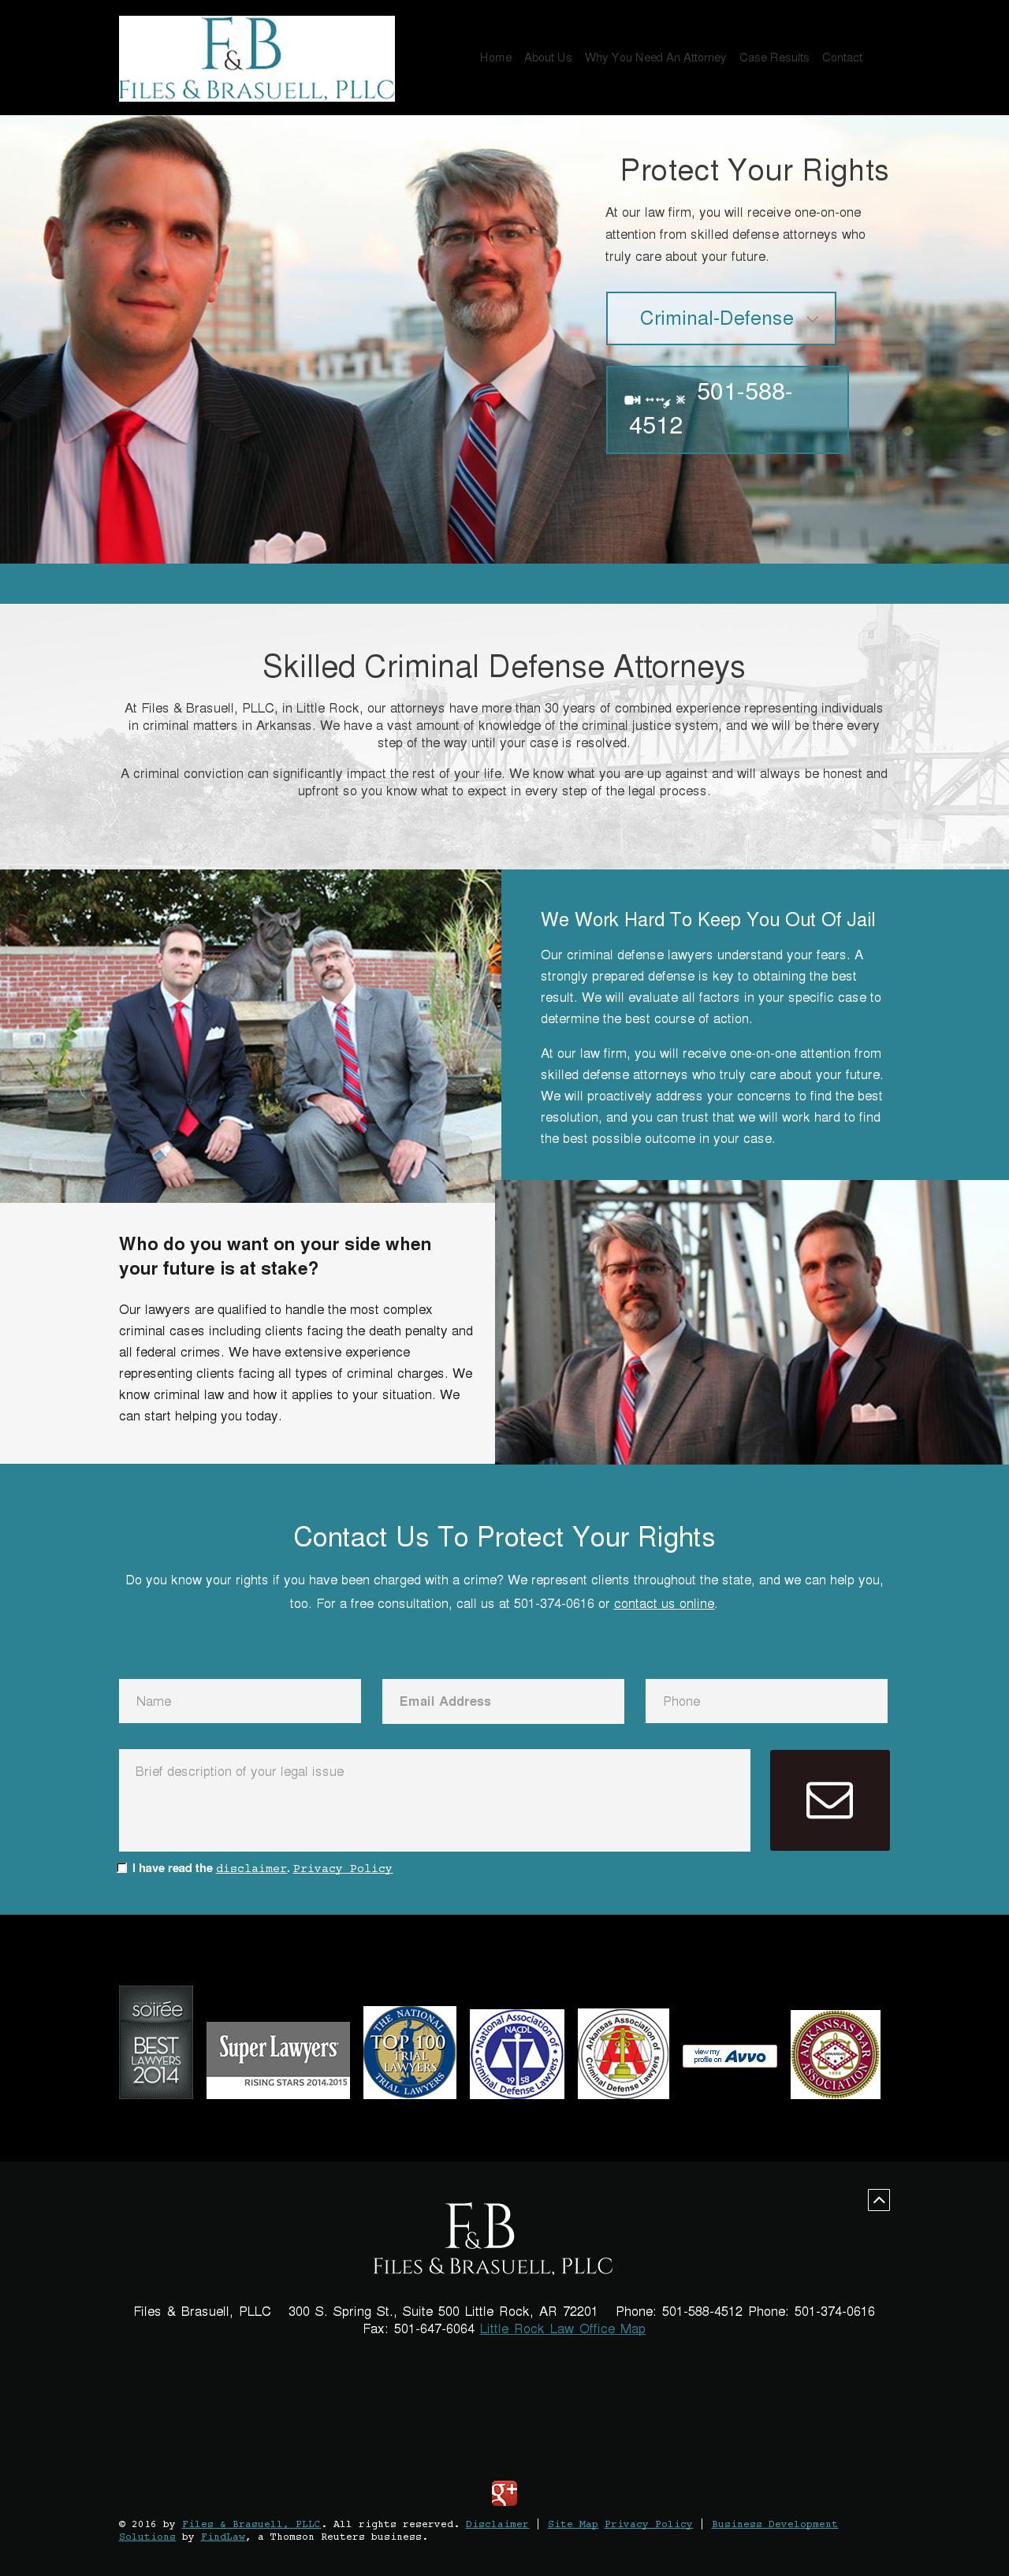 Files & Brasuell, PLLC - Little Rock AR Lawyers